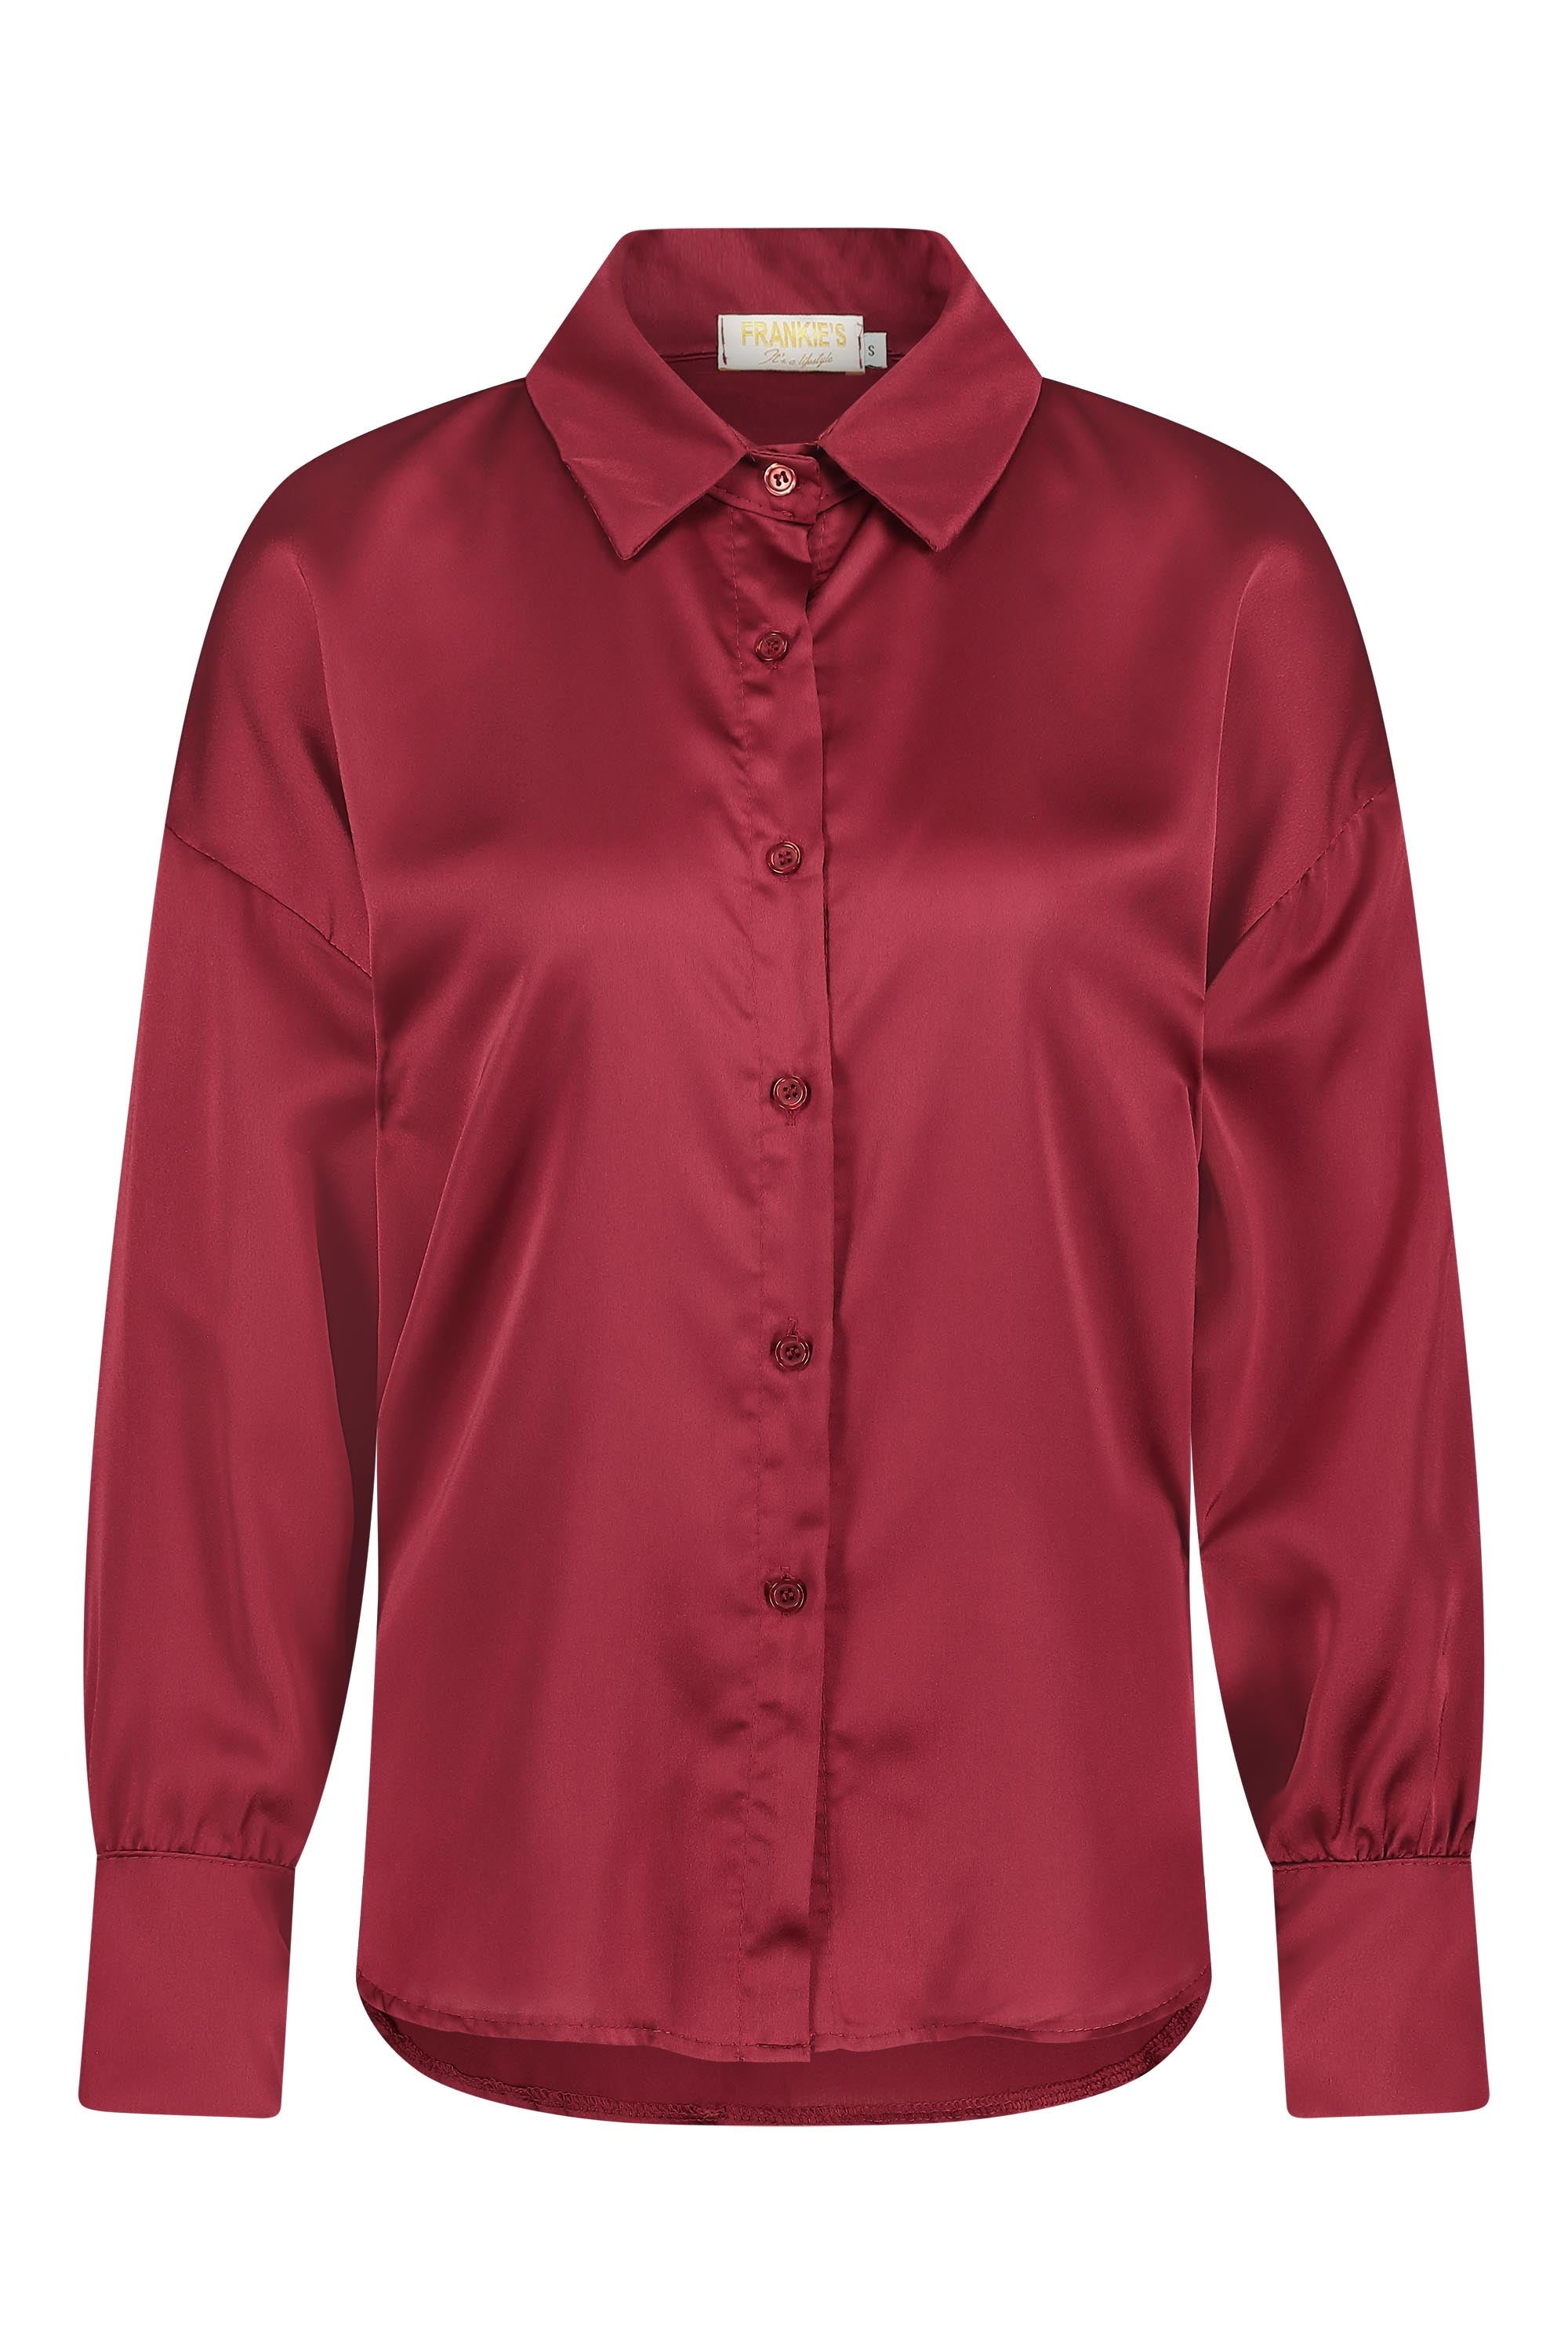 Satin blouse bordeaux red